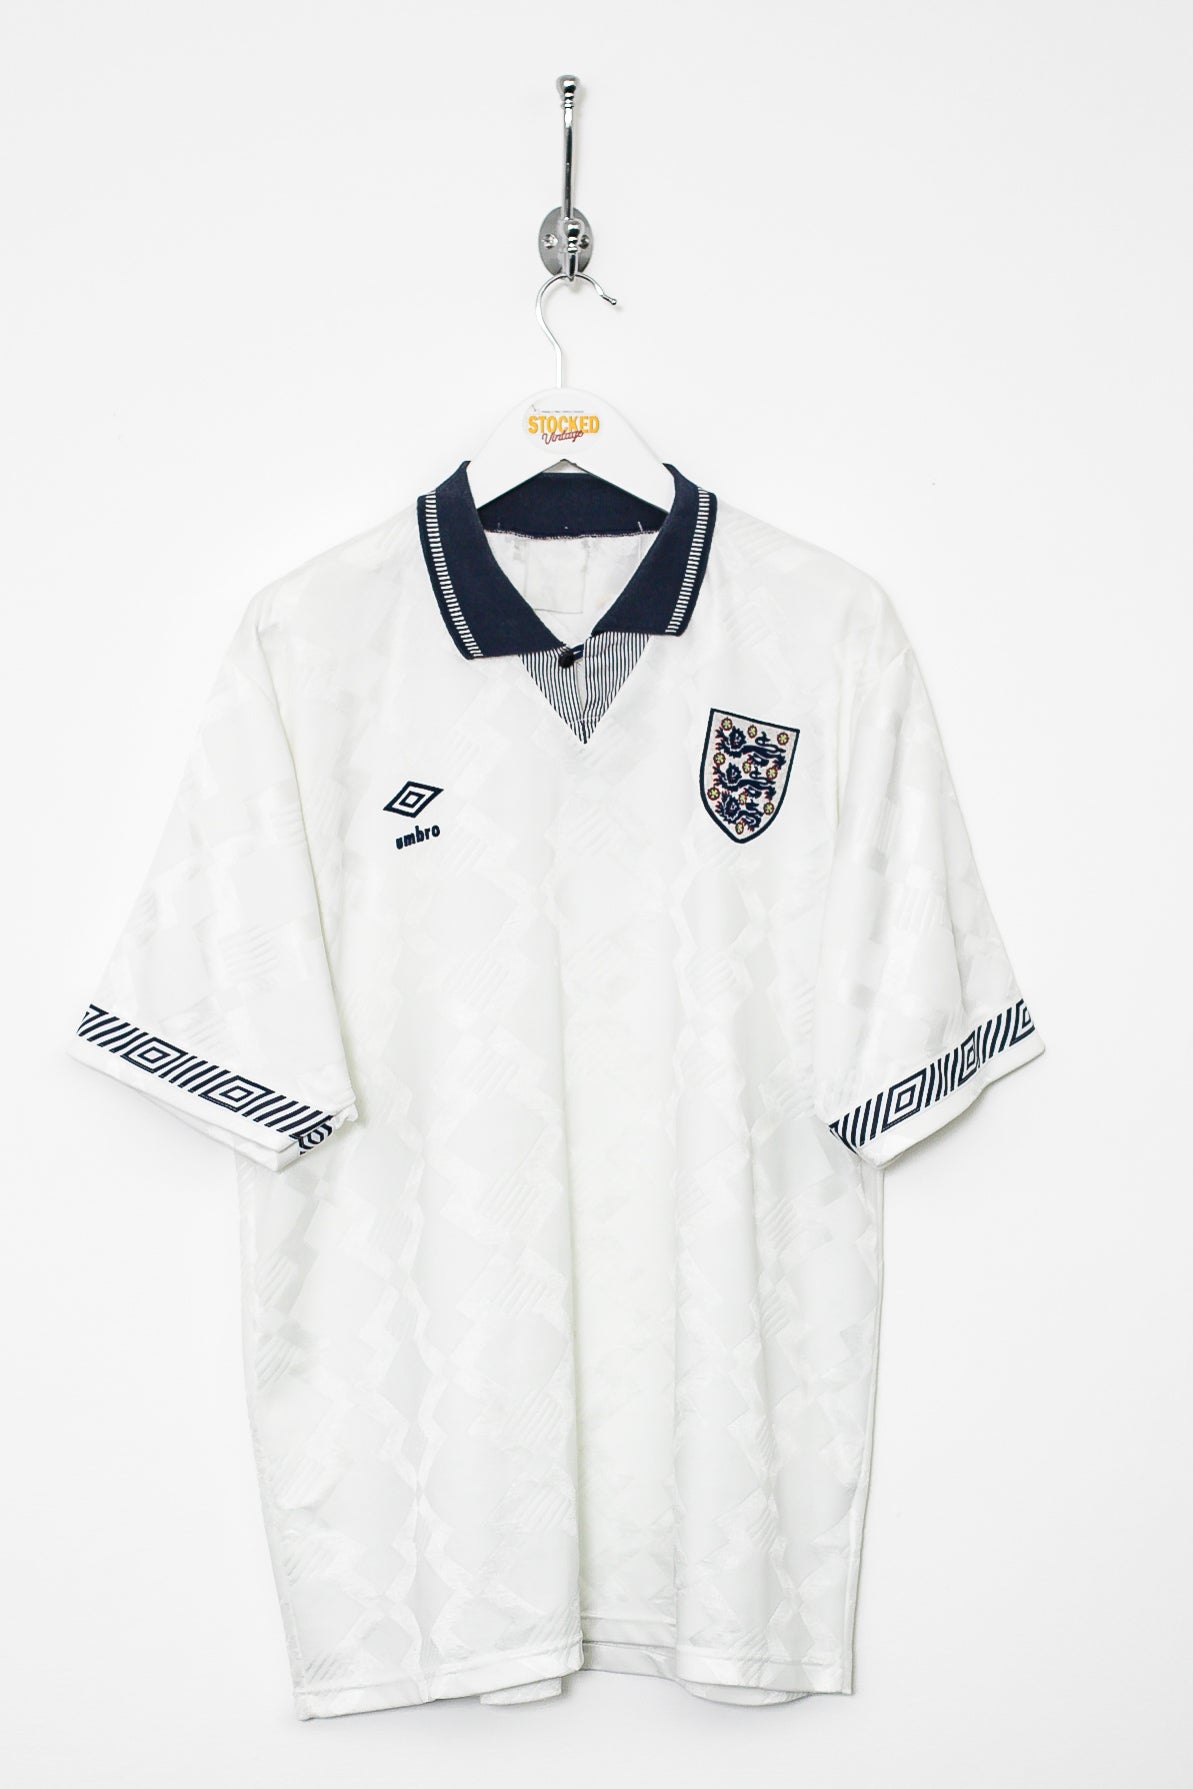 Umbro England 1990/92 Home Shirt (M)